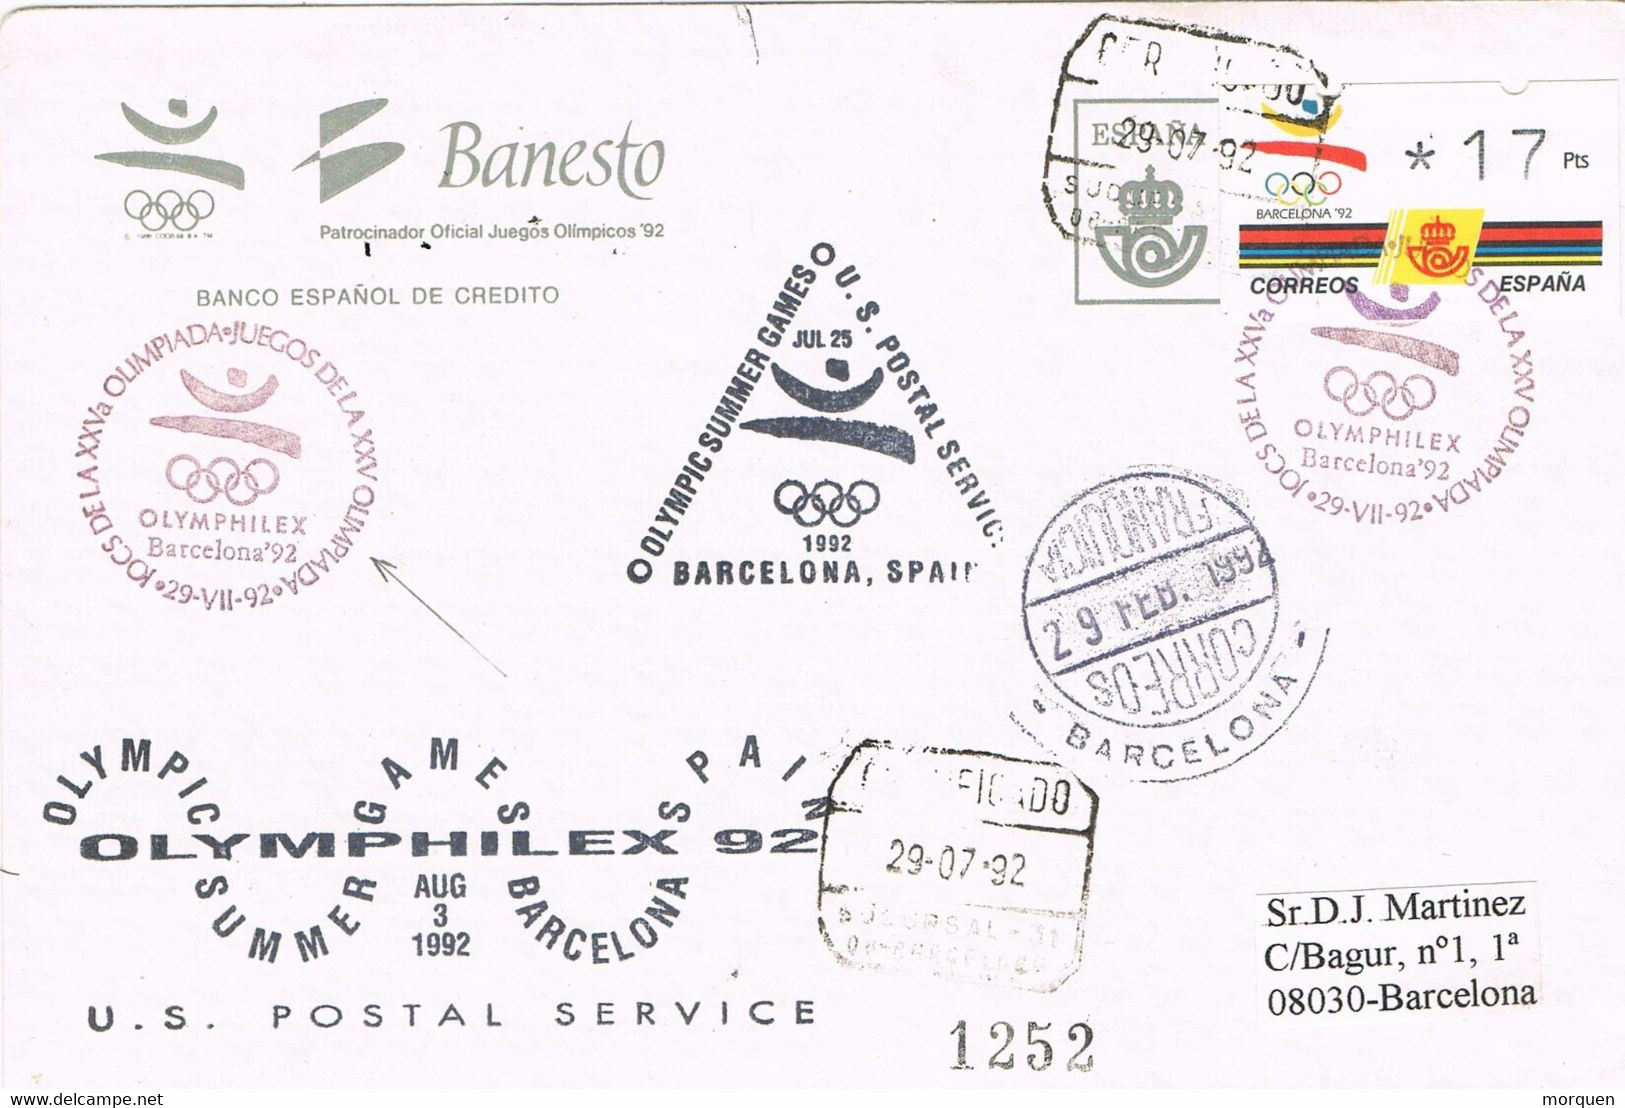 40281. Carta Certificada BARCELONA 1992. Juegos Olimpicos, Olymphilex. Banco Banesto. ATM Barcelona 92 - Covers & Documents